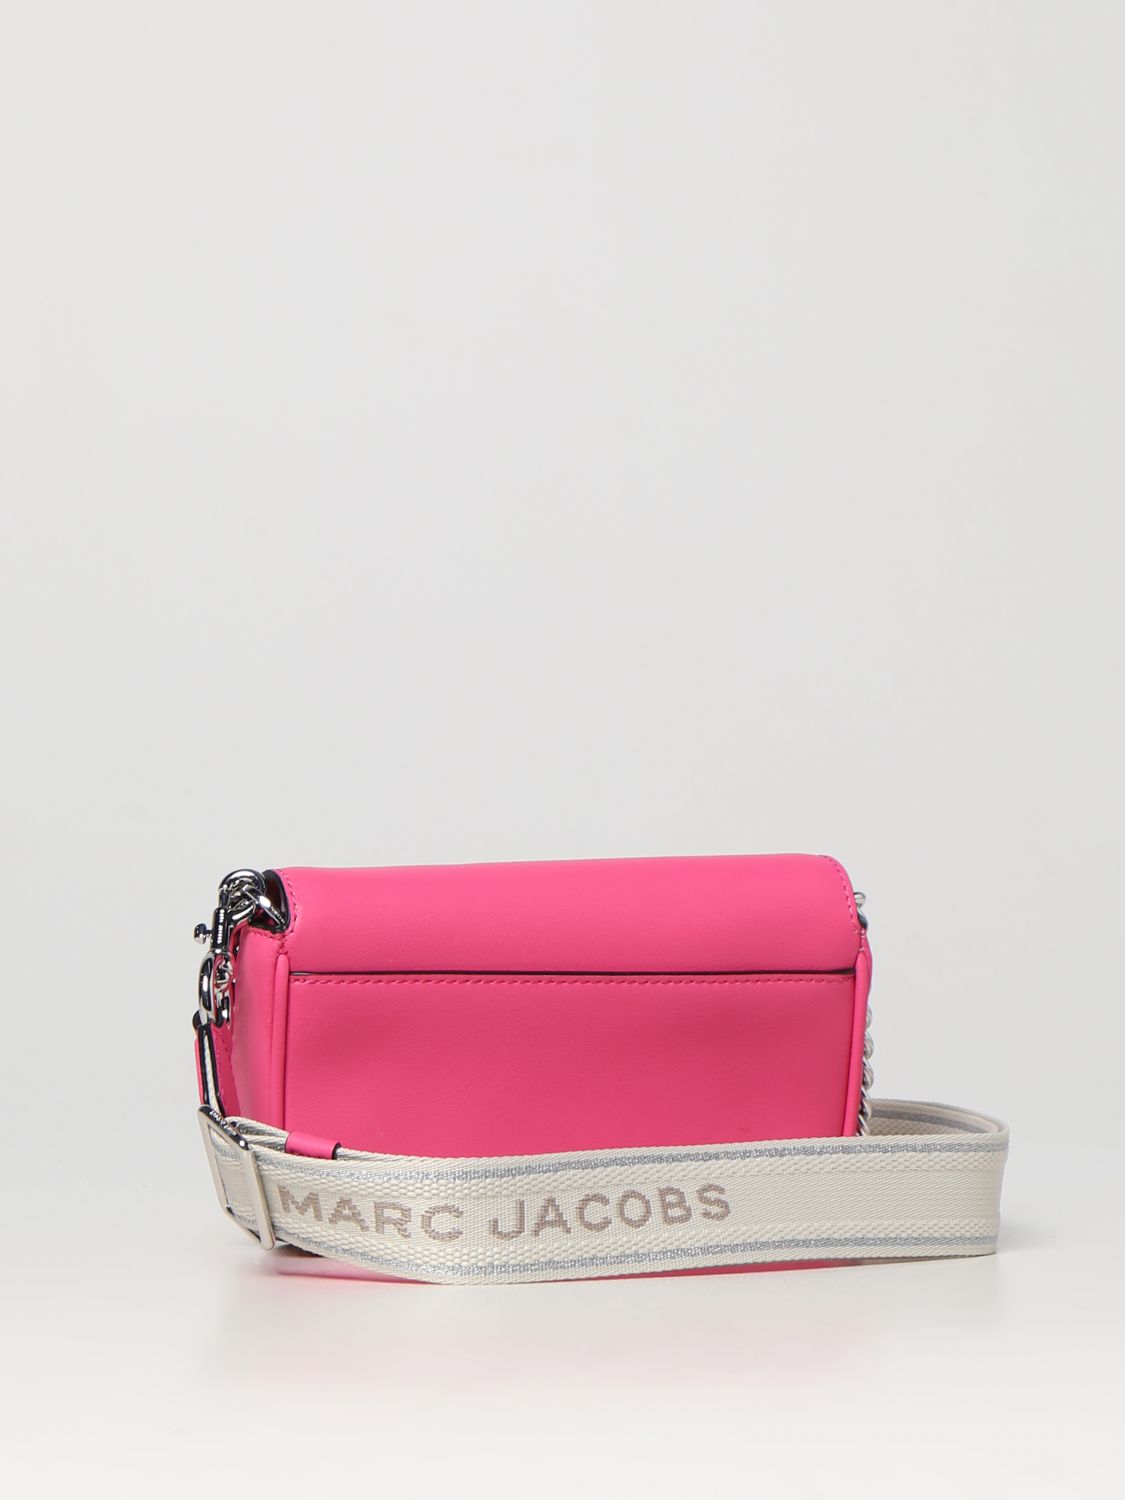 迷你包 Marc Jacobs: Marc Jacobs迷你包女士 紫红色 2